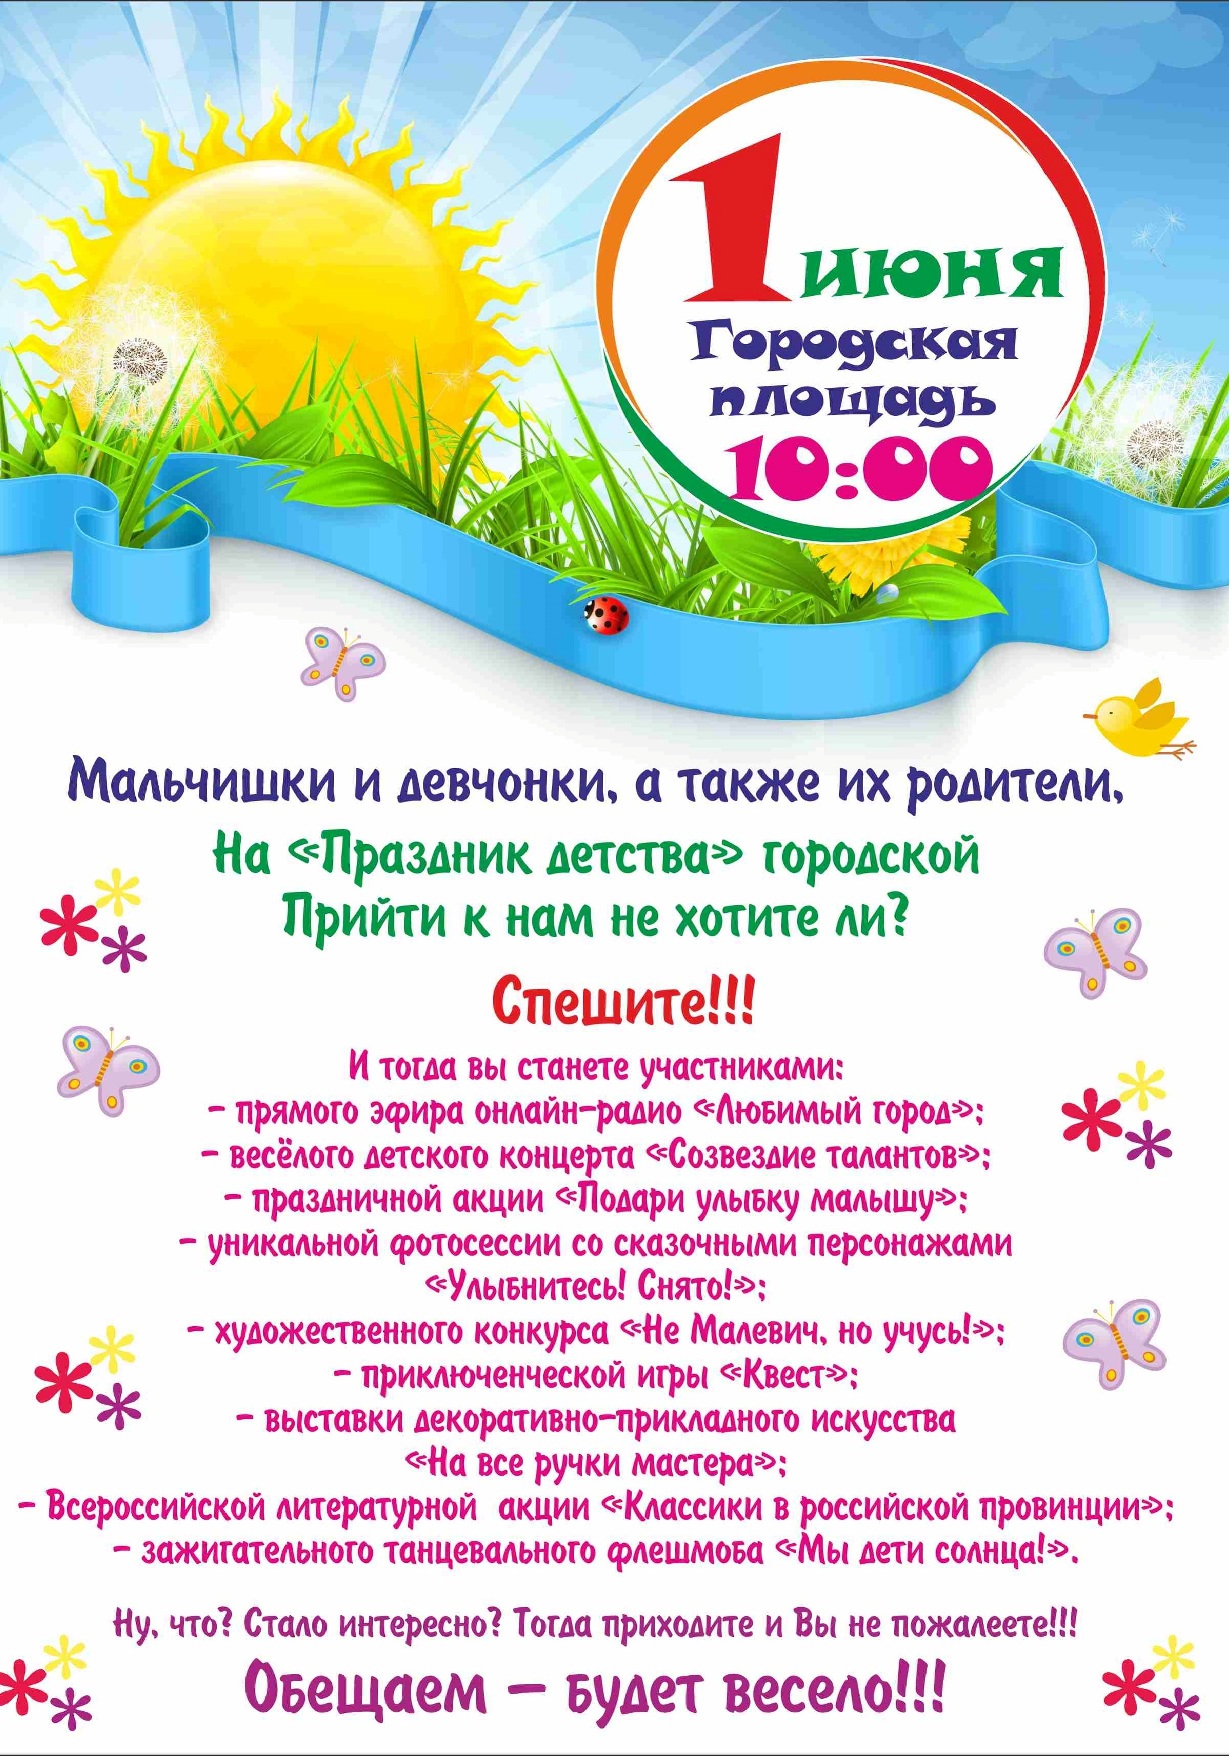 1 июня хабаровск. Афиша 1 июня. Афиша на 1 июня день защиты детей. Афиша детского праздника 1 июня. Объявление на день защиты детей.